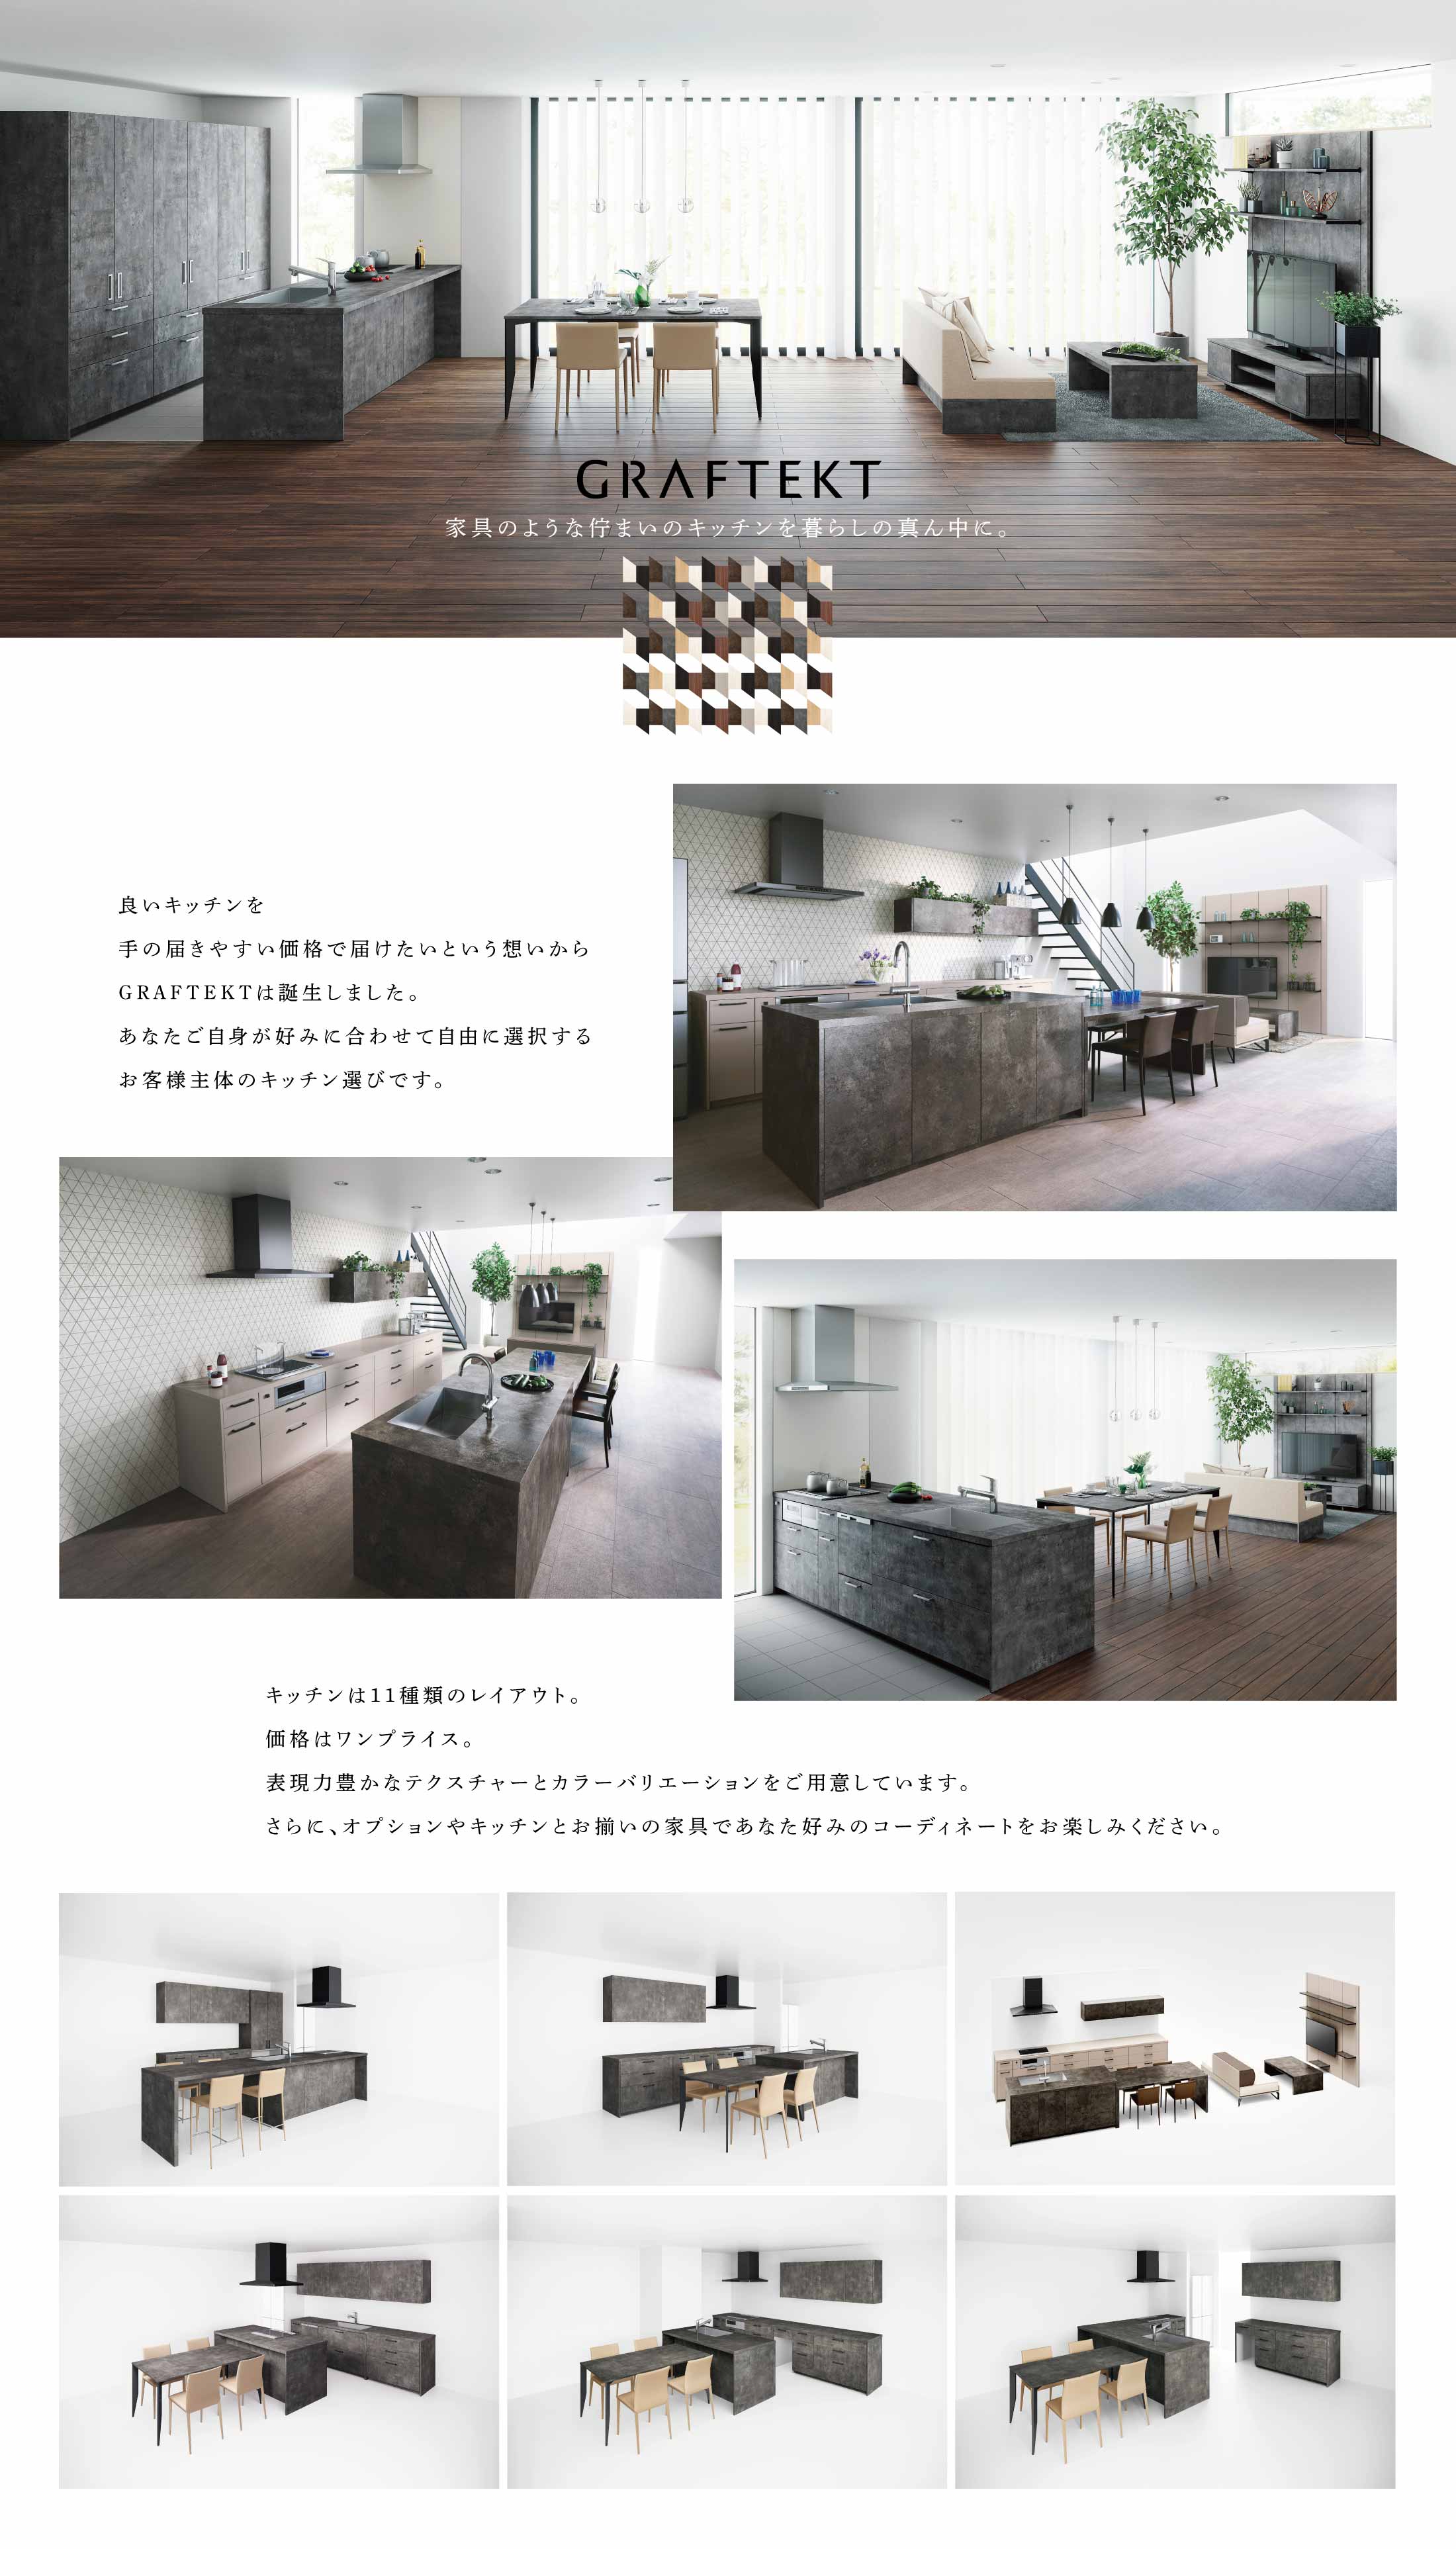 話題のキッチンブランド「GRAFTEKT」（グラフテクト）をショールーム展示!